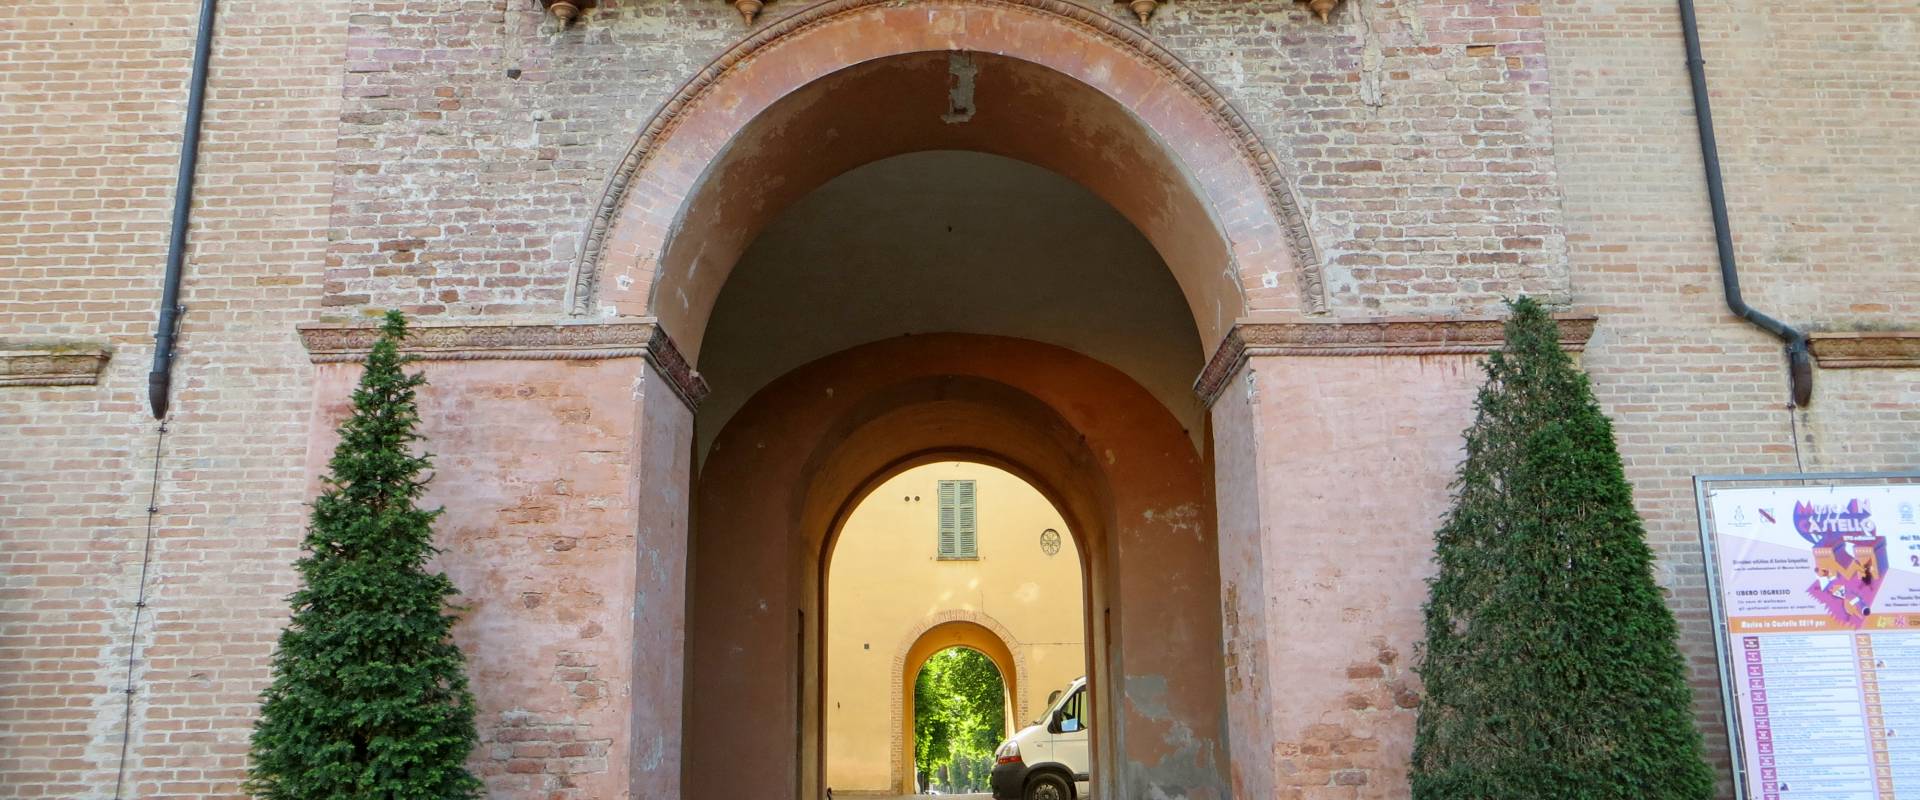 Rocca Pallavicino (Busseto) - portale d'ingresso 2019-06-19 photo by Parma198